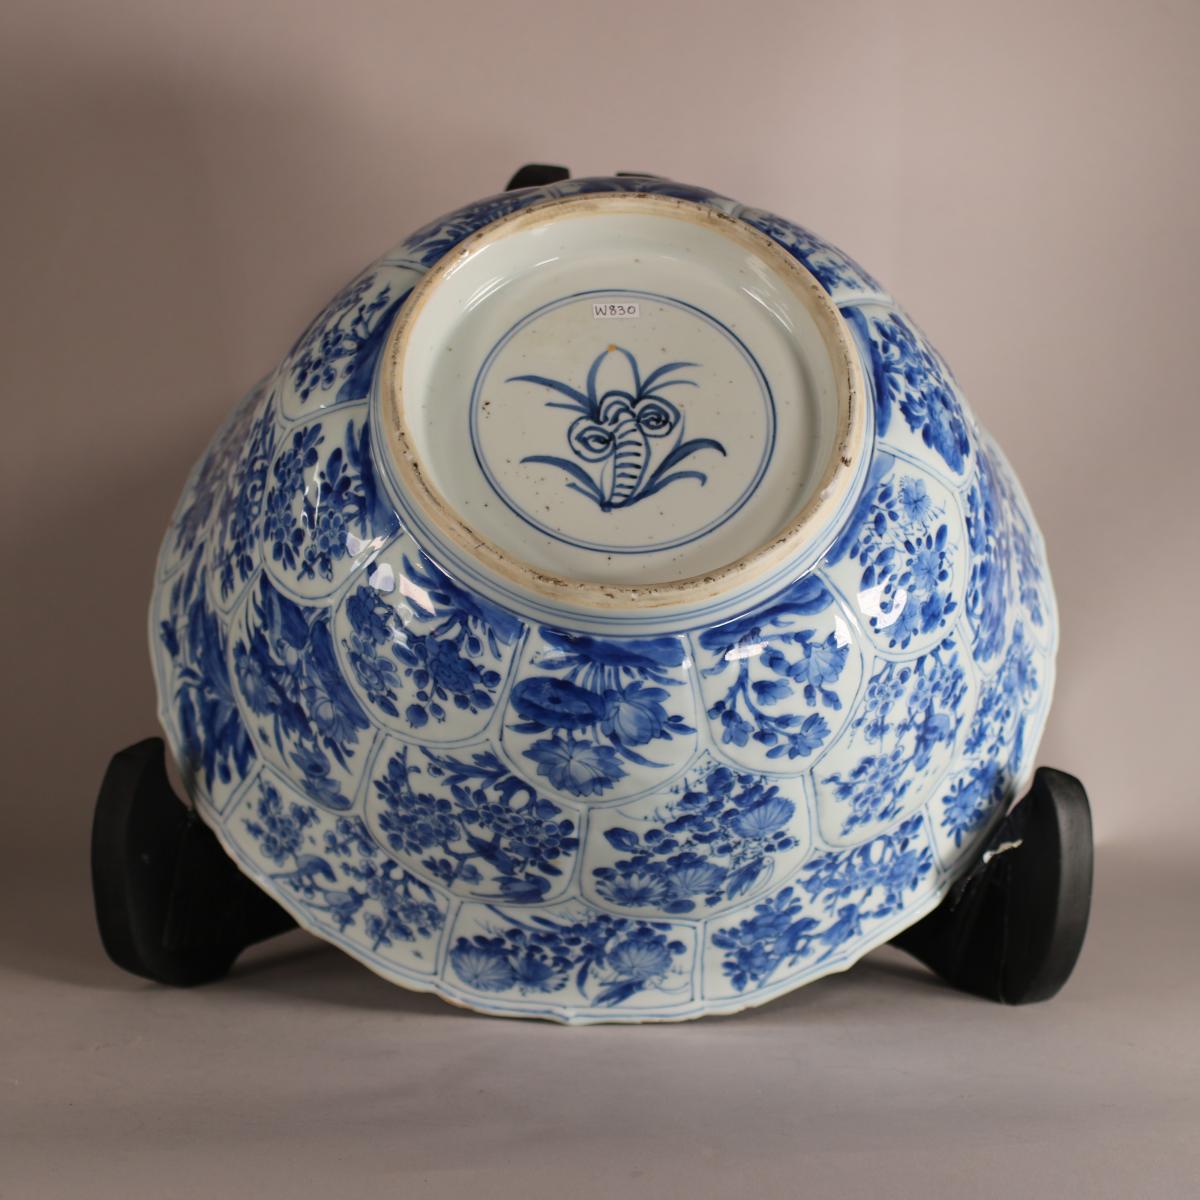 Base of Kangxi bowl showing lingzhi mark